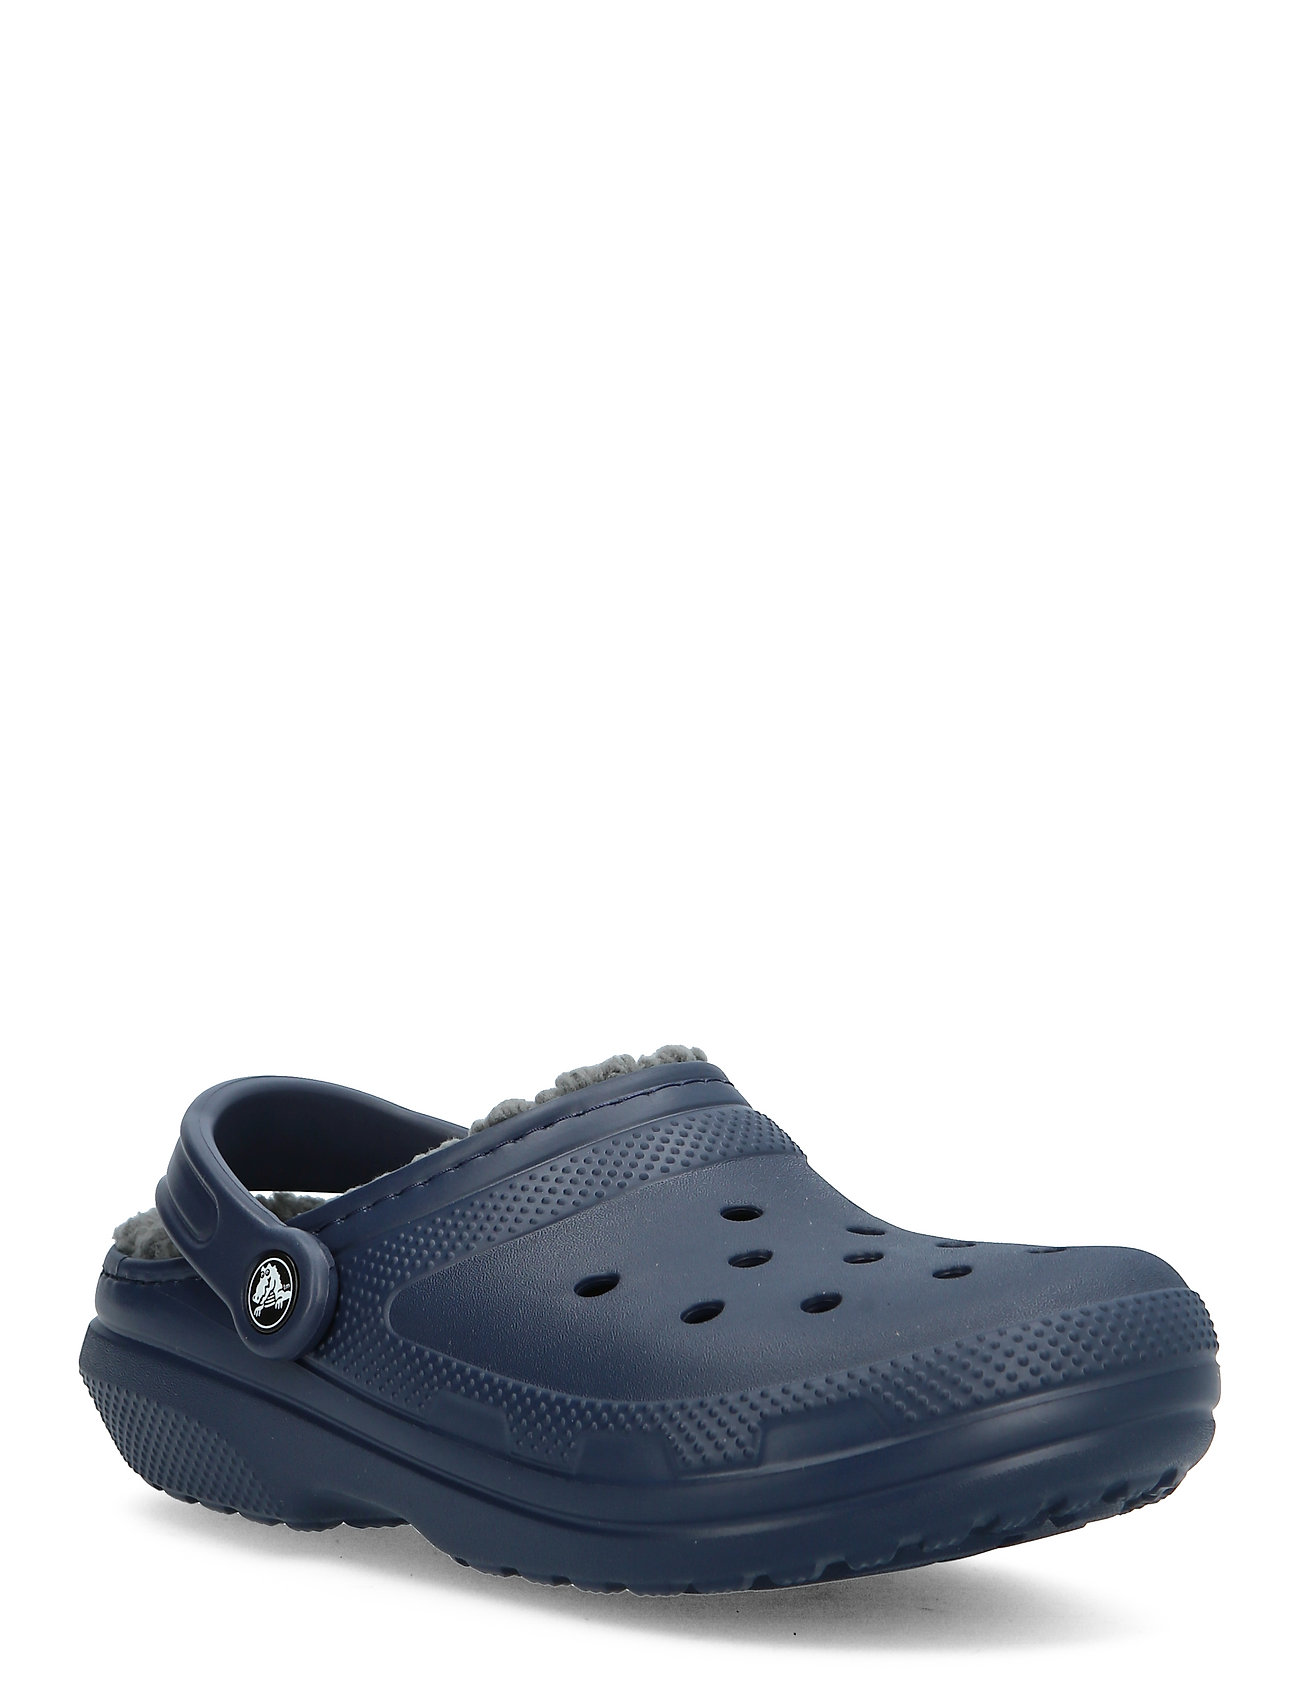 Crocs Classic Lined Clog Shoes Summer Shoes Sandals Blå Crocs